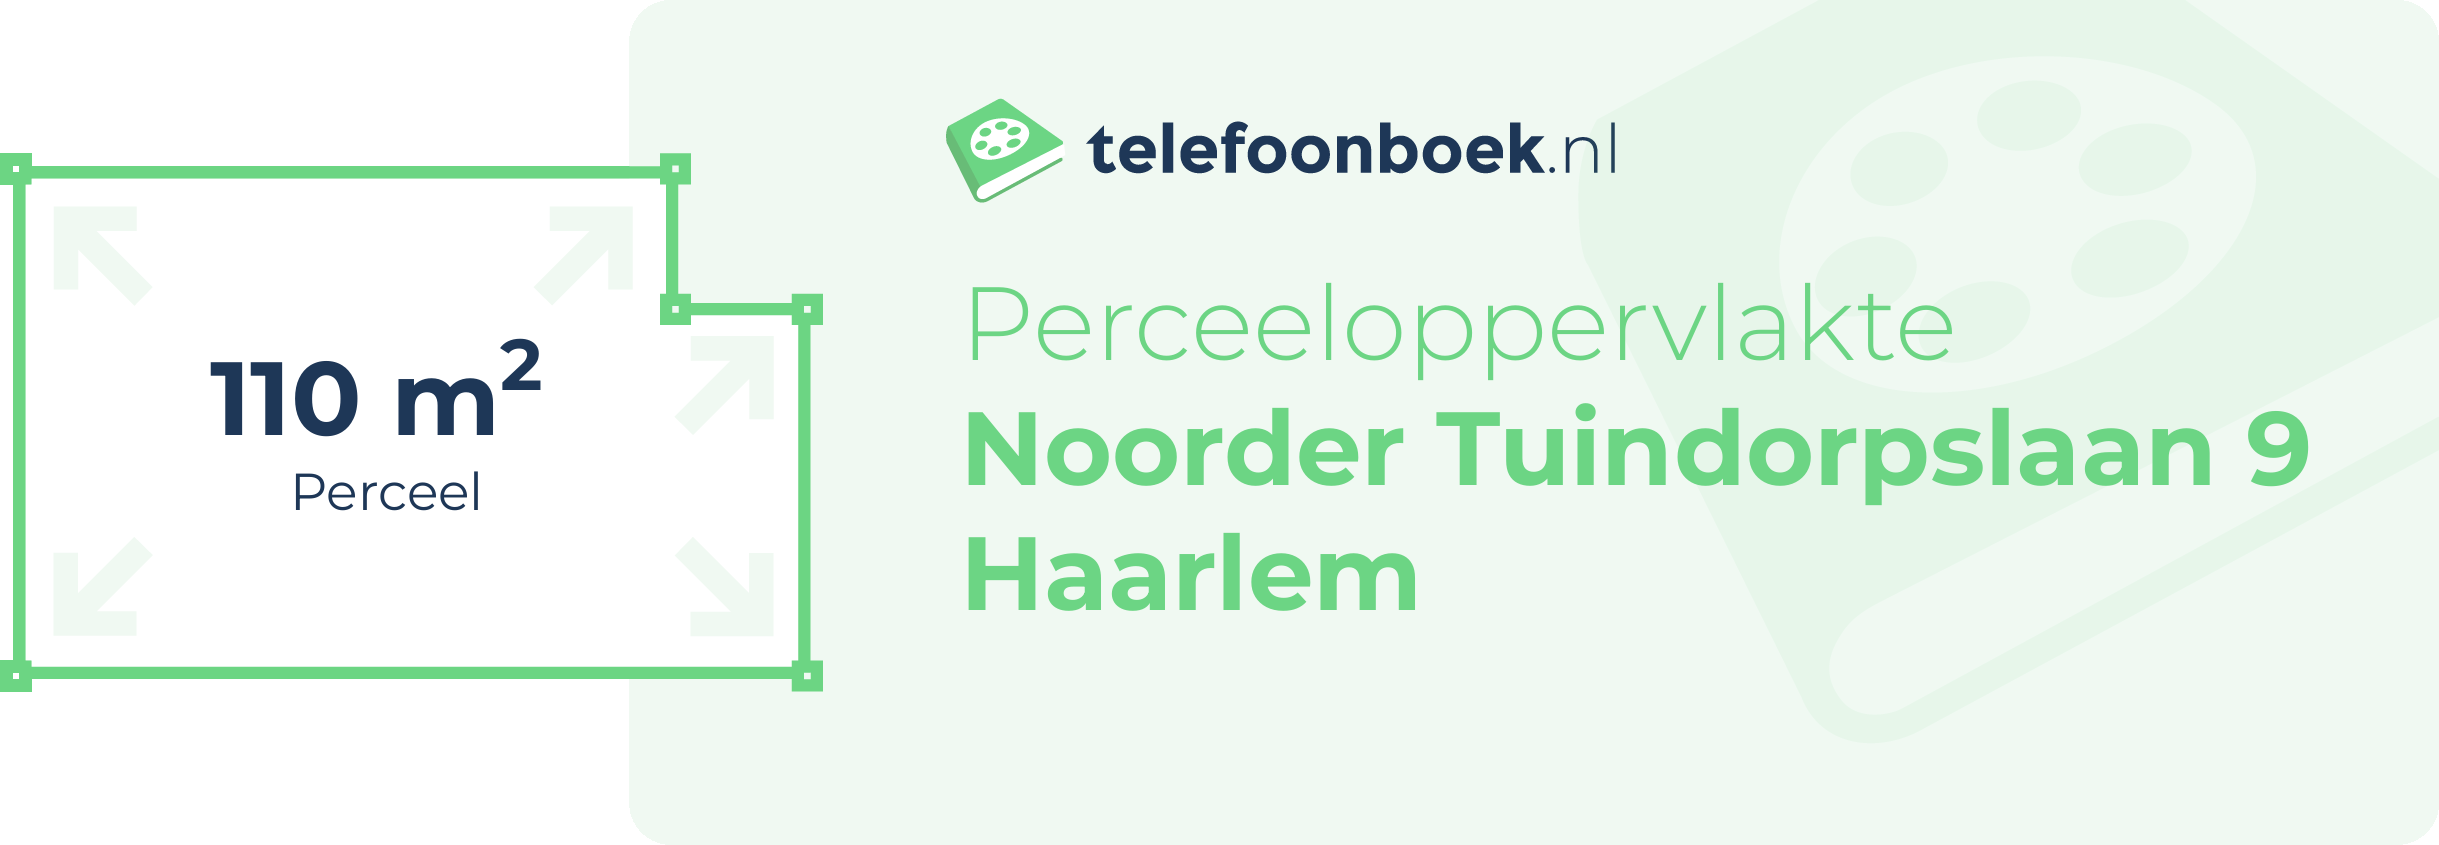 Perceeloppervlakte Noorder Tuindorpslaan 9 Haarlem